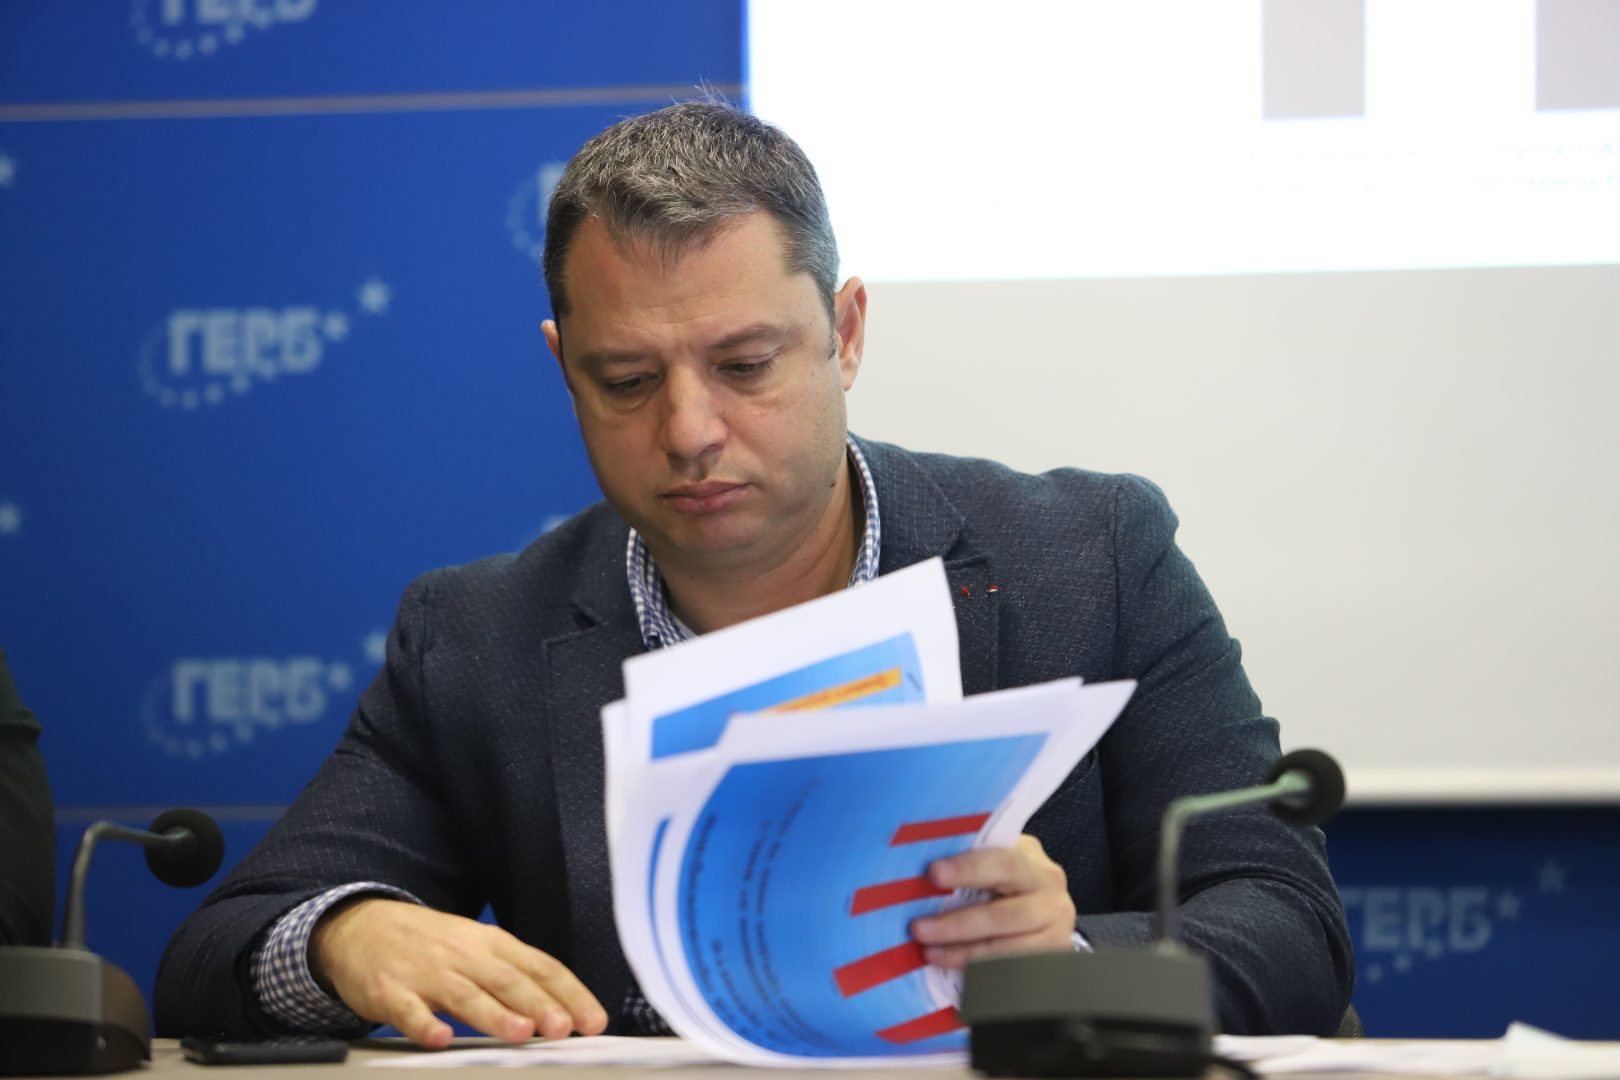 Делян Добрев, ГЕРБ: Ще говорим с ДПС и с "Демократична България" след изборите